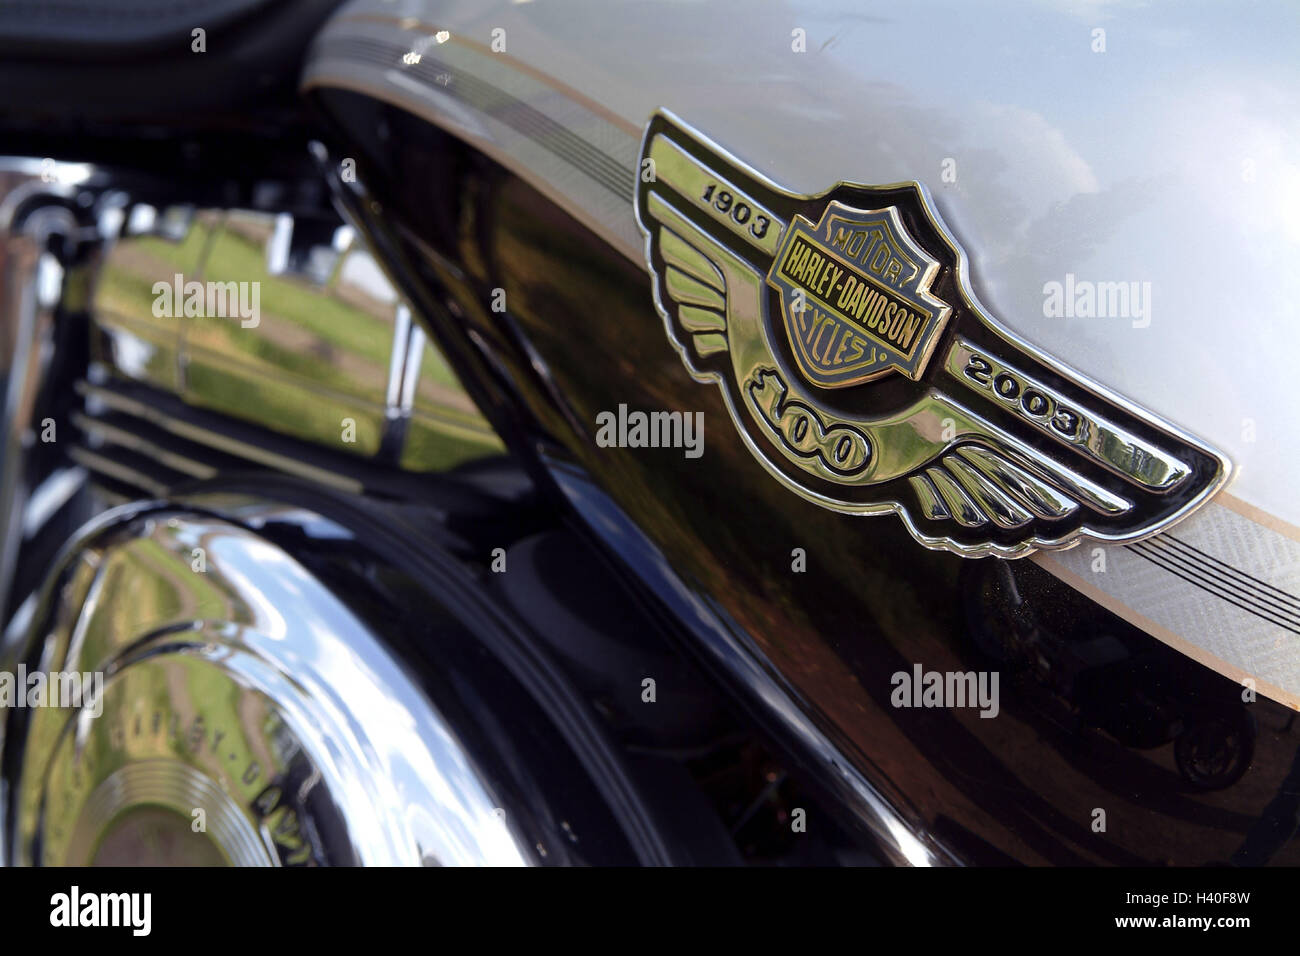 Harley Davidson Emblem Stockfotos und -bilder Kaufen - Alamy